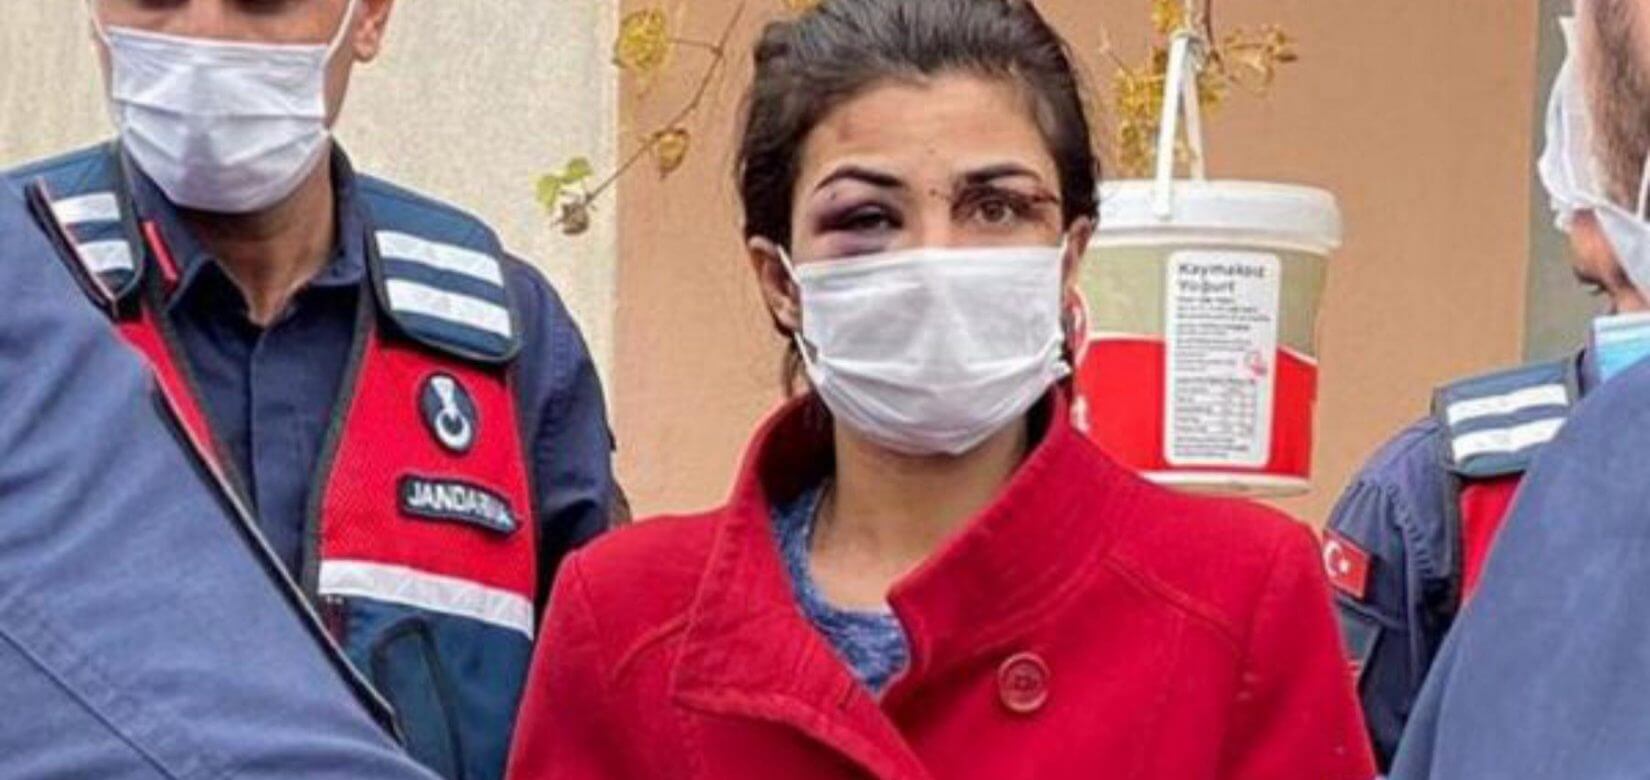 Τουρκία: Δικαίωση για την Μελέκ Ιπέκ που είχε σκοτώσει τον σύζυγο βασανιστή της (φωτό)